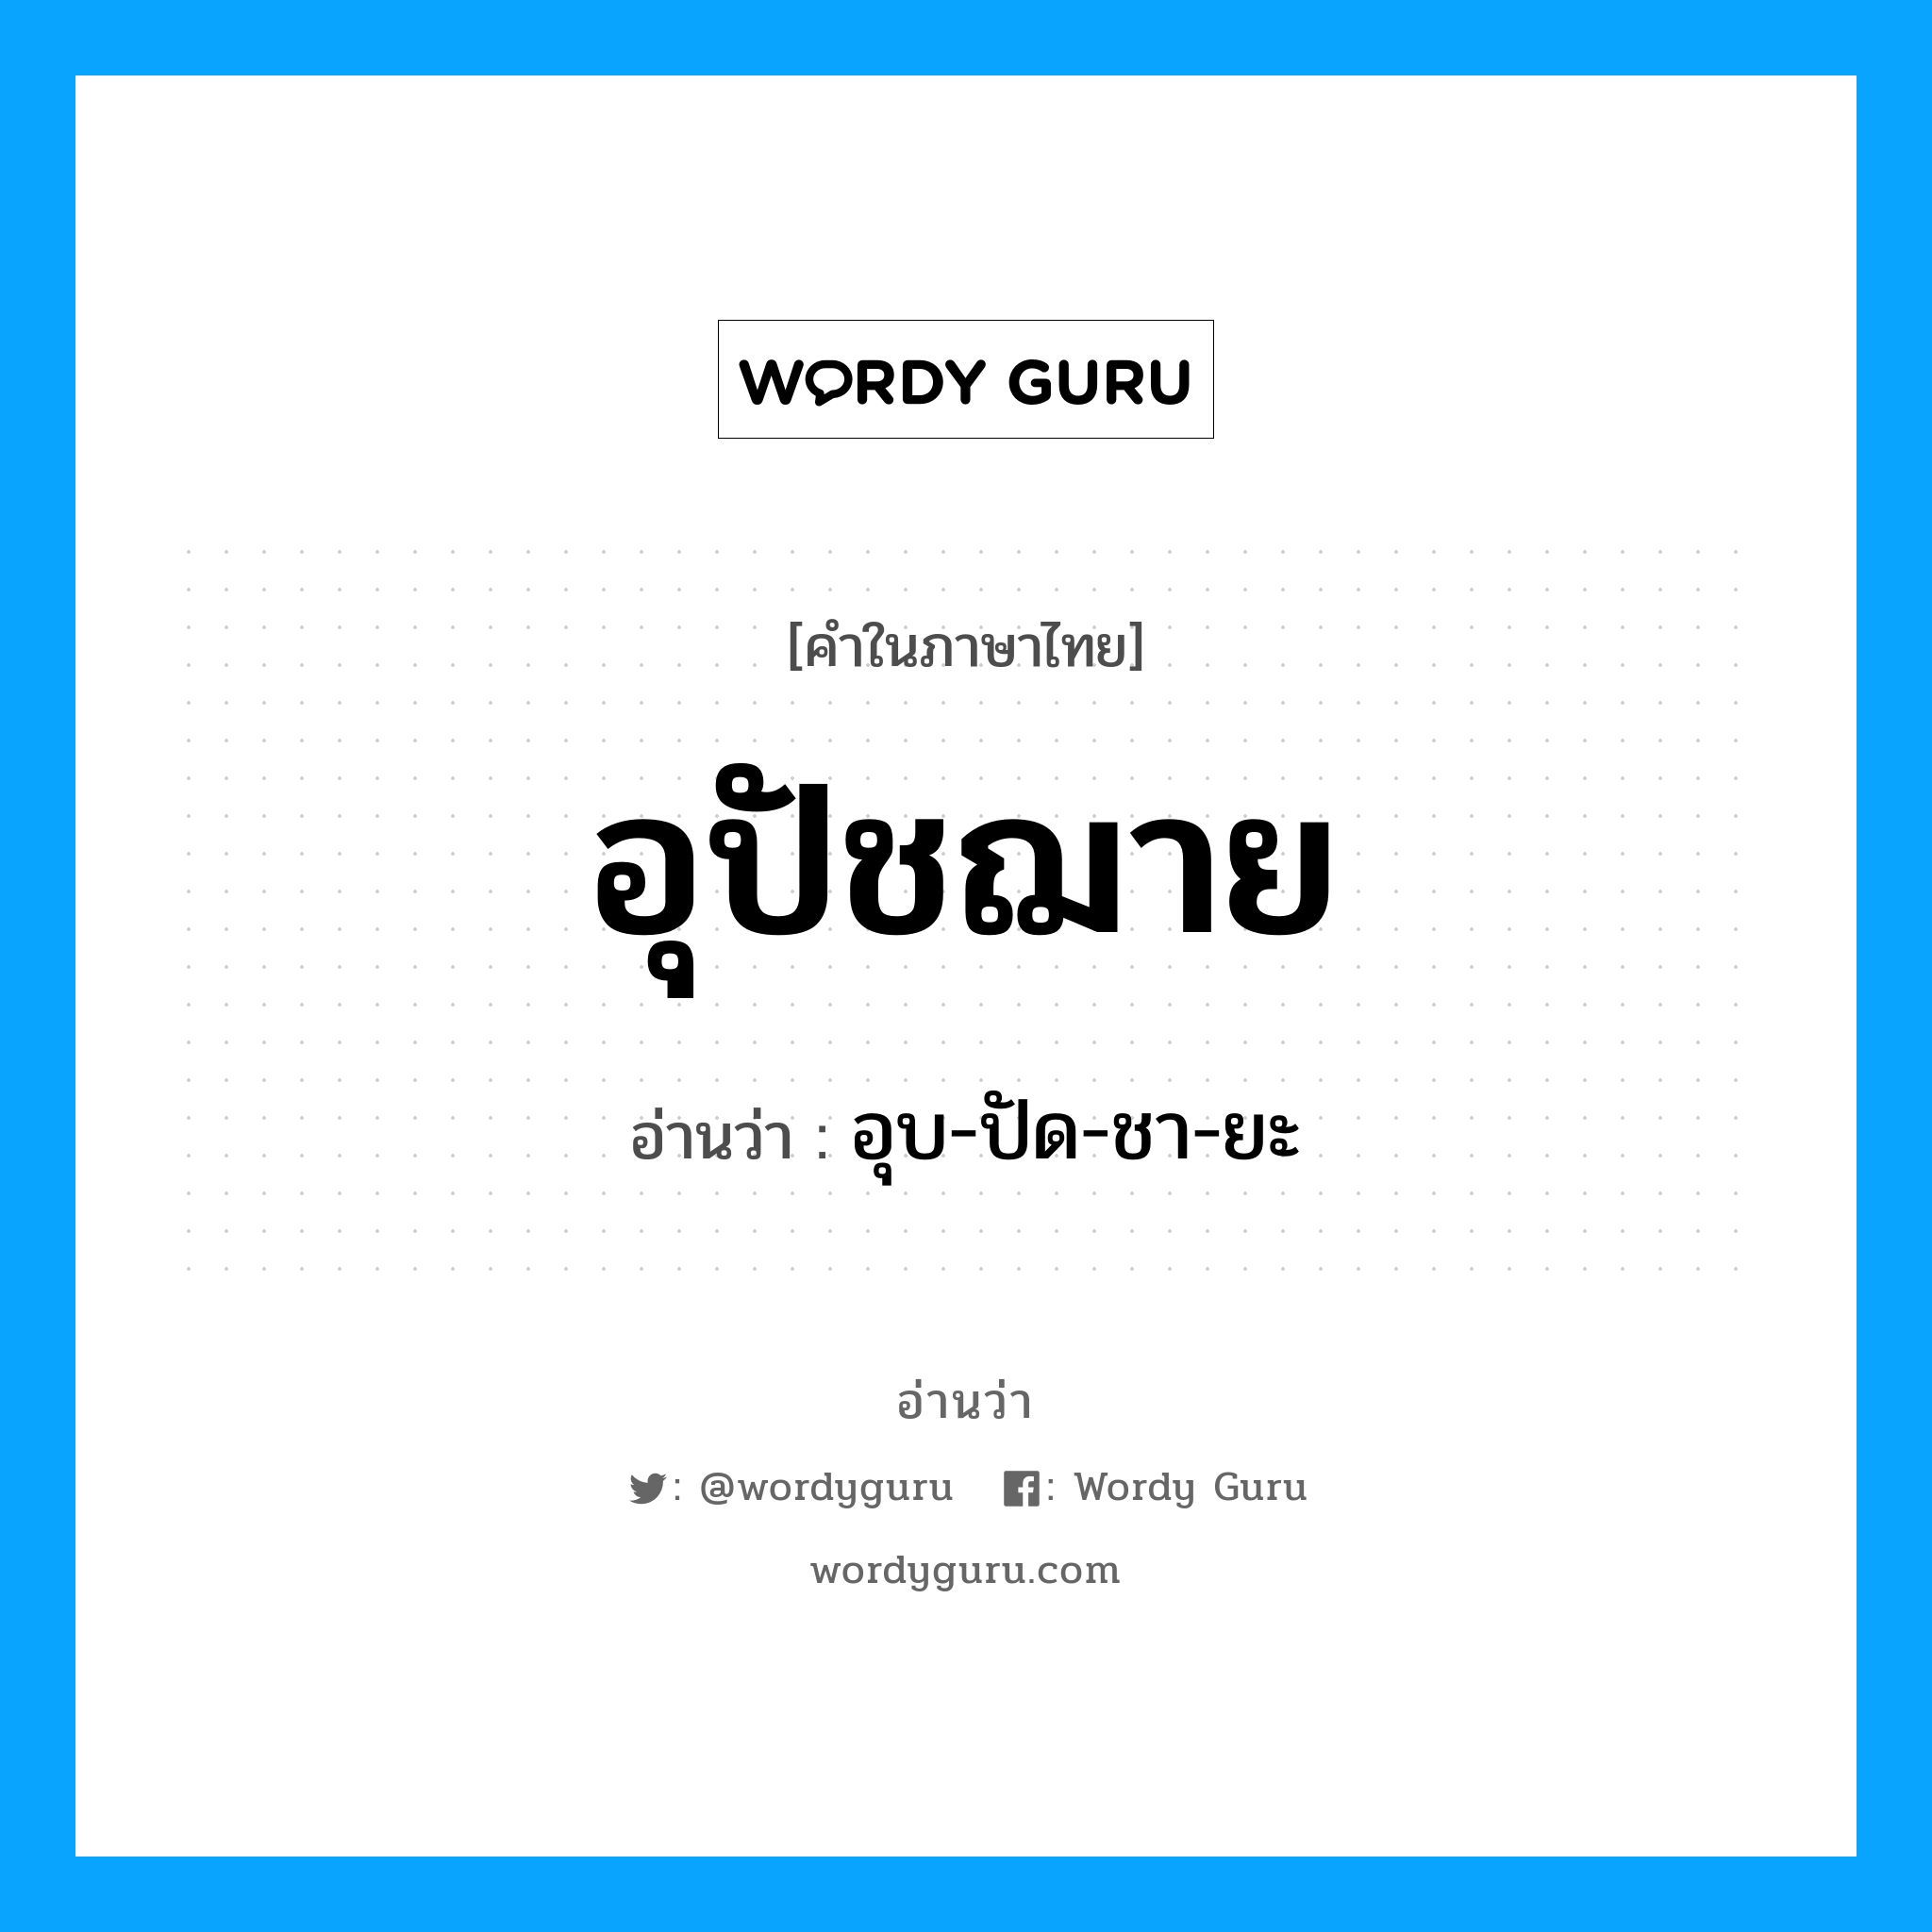 อุบ-ปัด-ชา-ยะ เป็นคำอ่านของคำไหน?, คำในภาษาไทย อุบ-ปัด-ชา-ยะ อ่านว่า อุปัชฌาย